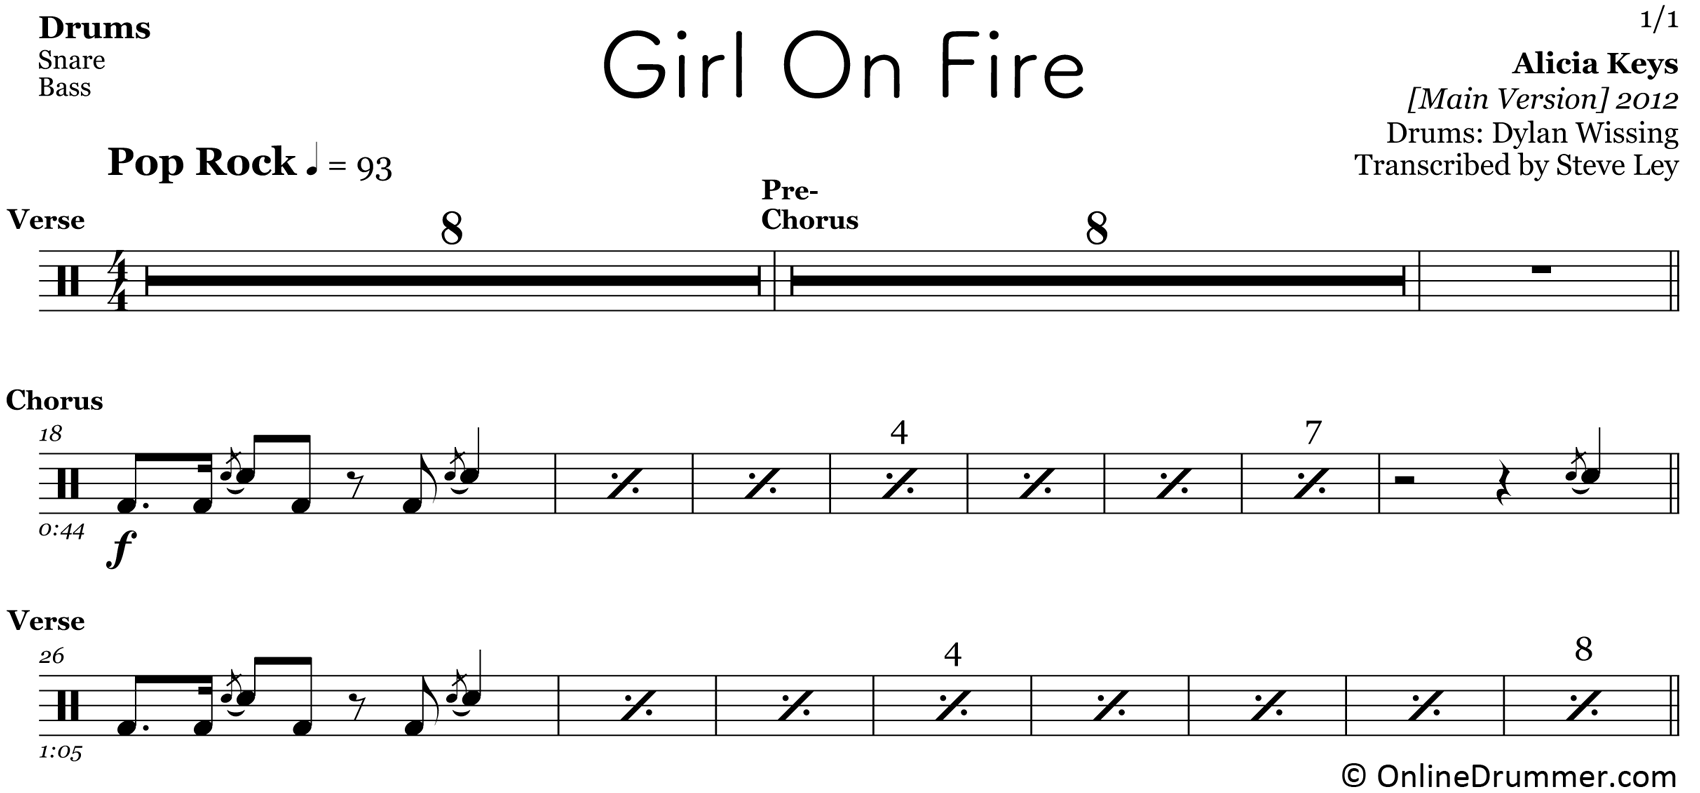 Girl On Fire - Alicia Keys - Drum Sheet Music